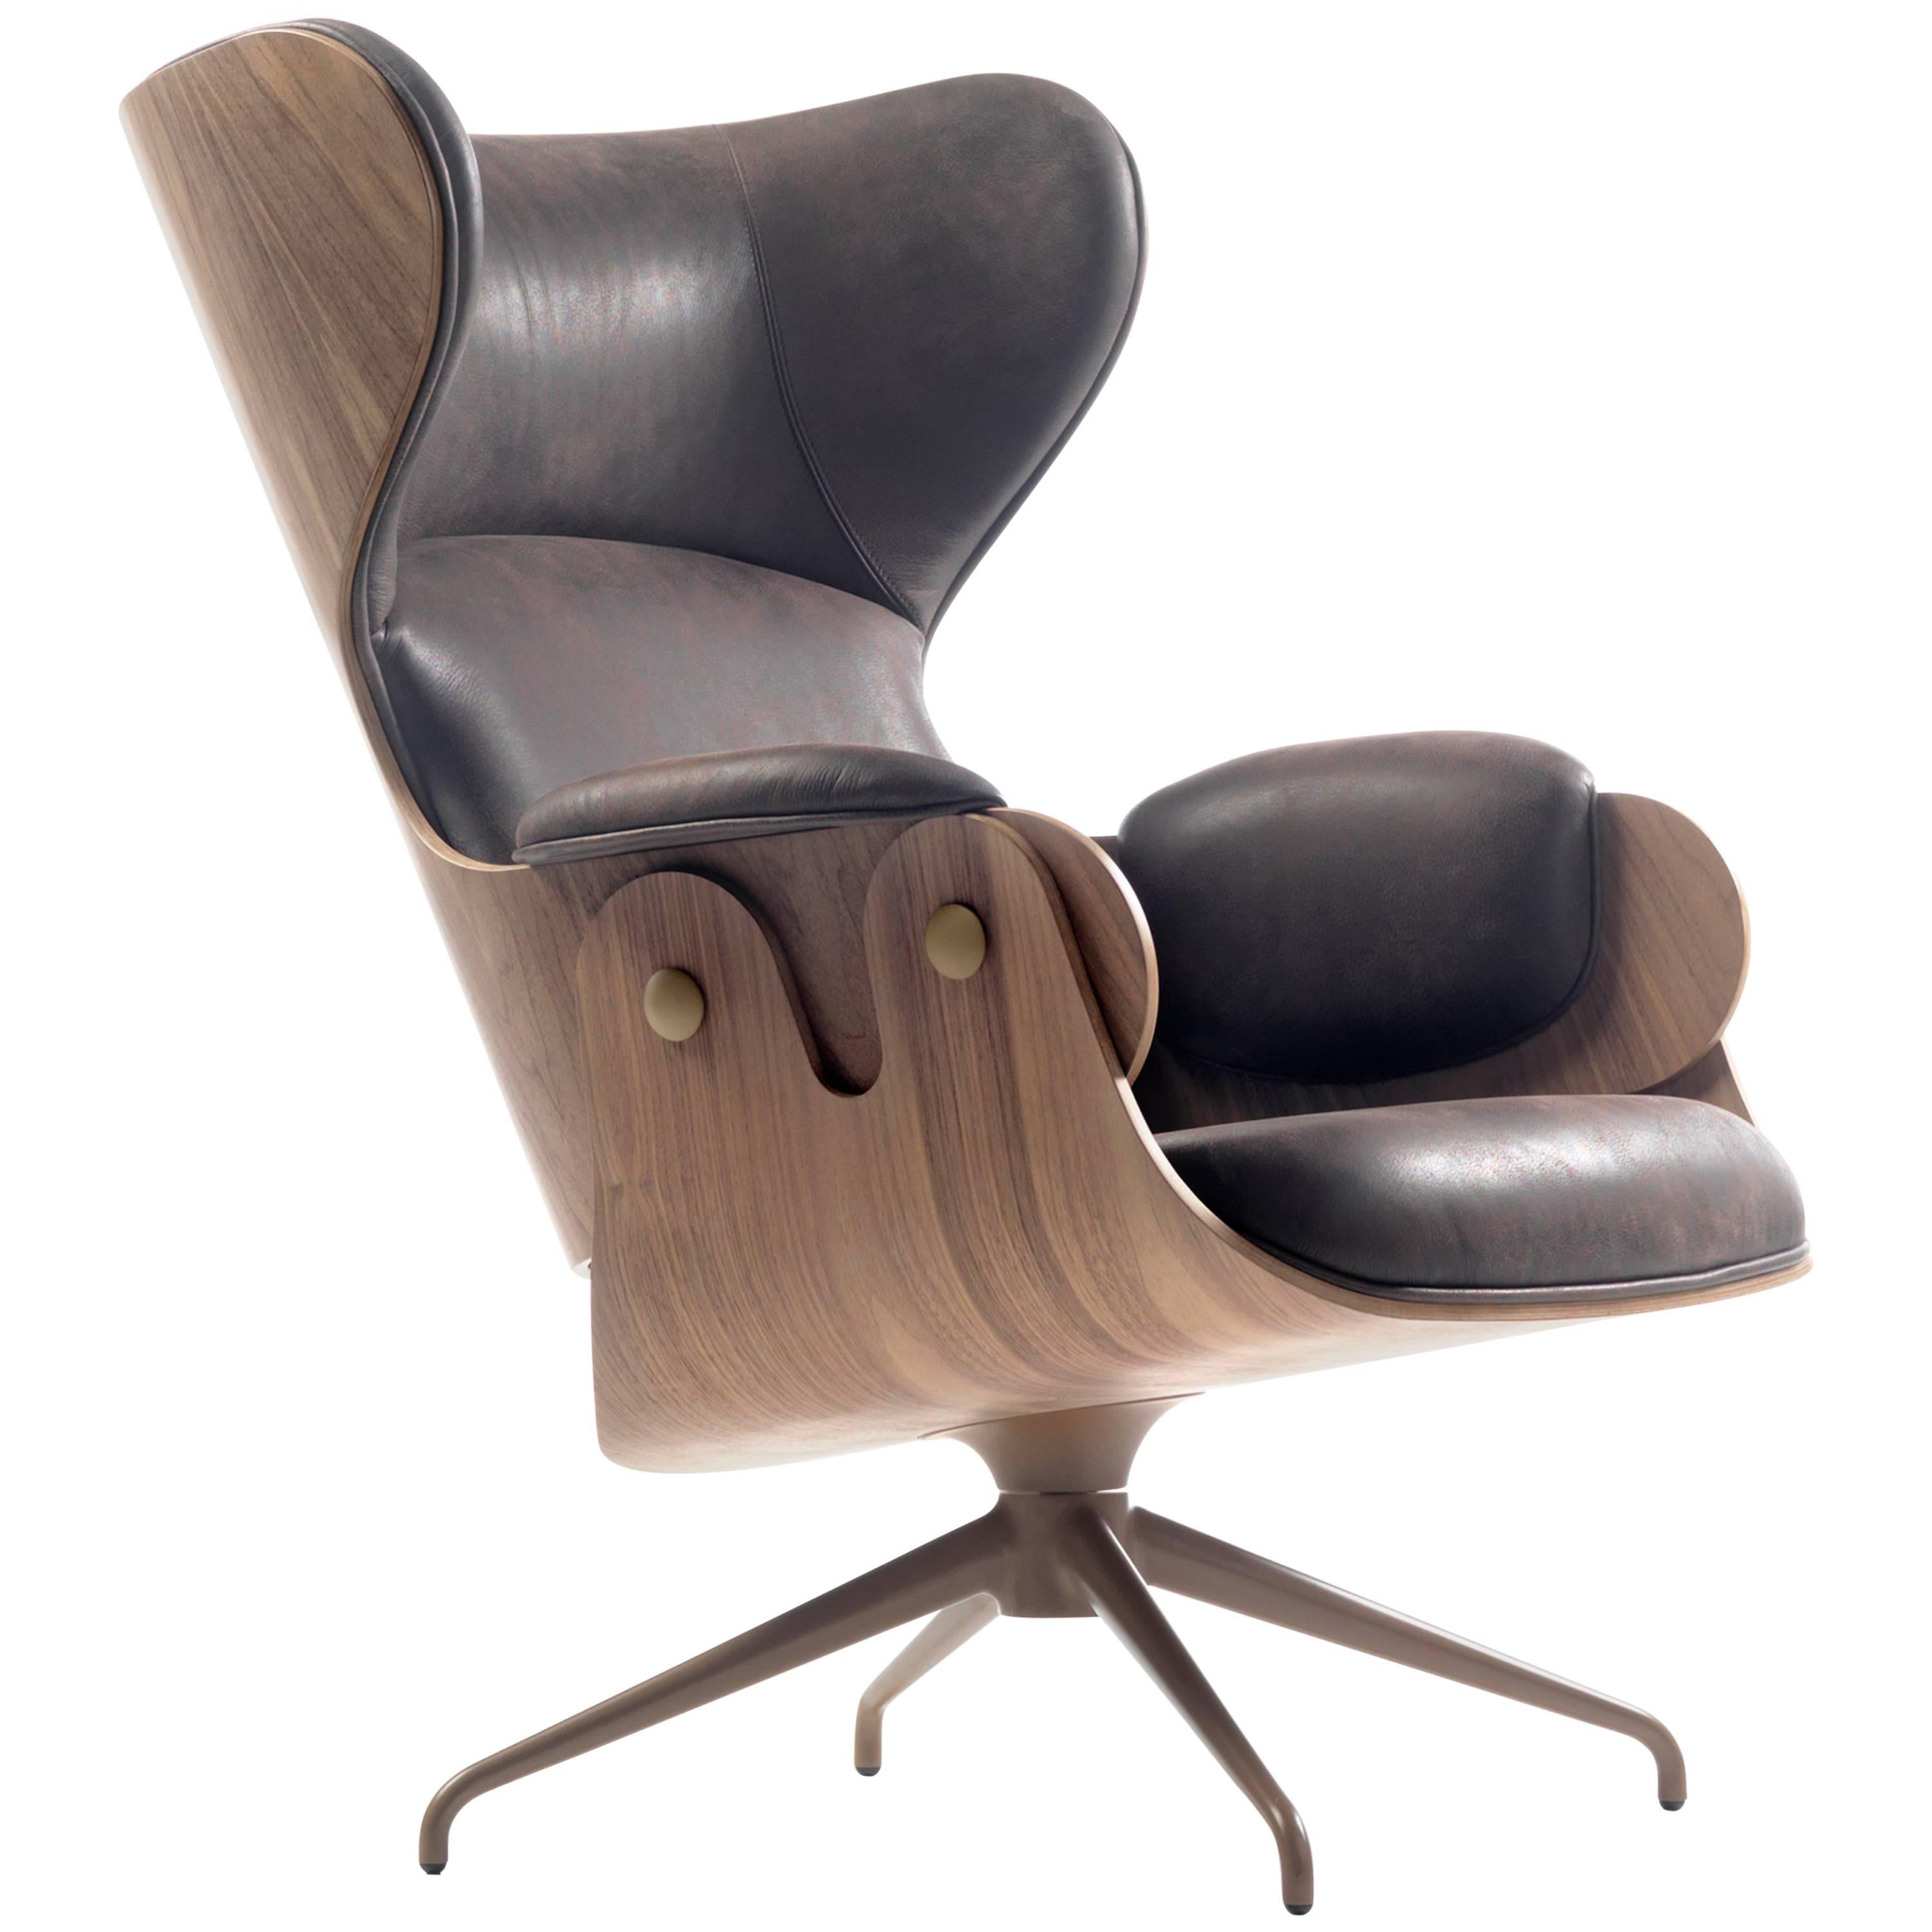 Chaise longue contemporaine, "Lounger" de Jaime Hayon, noyer, cuir vintage